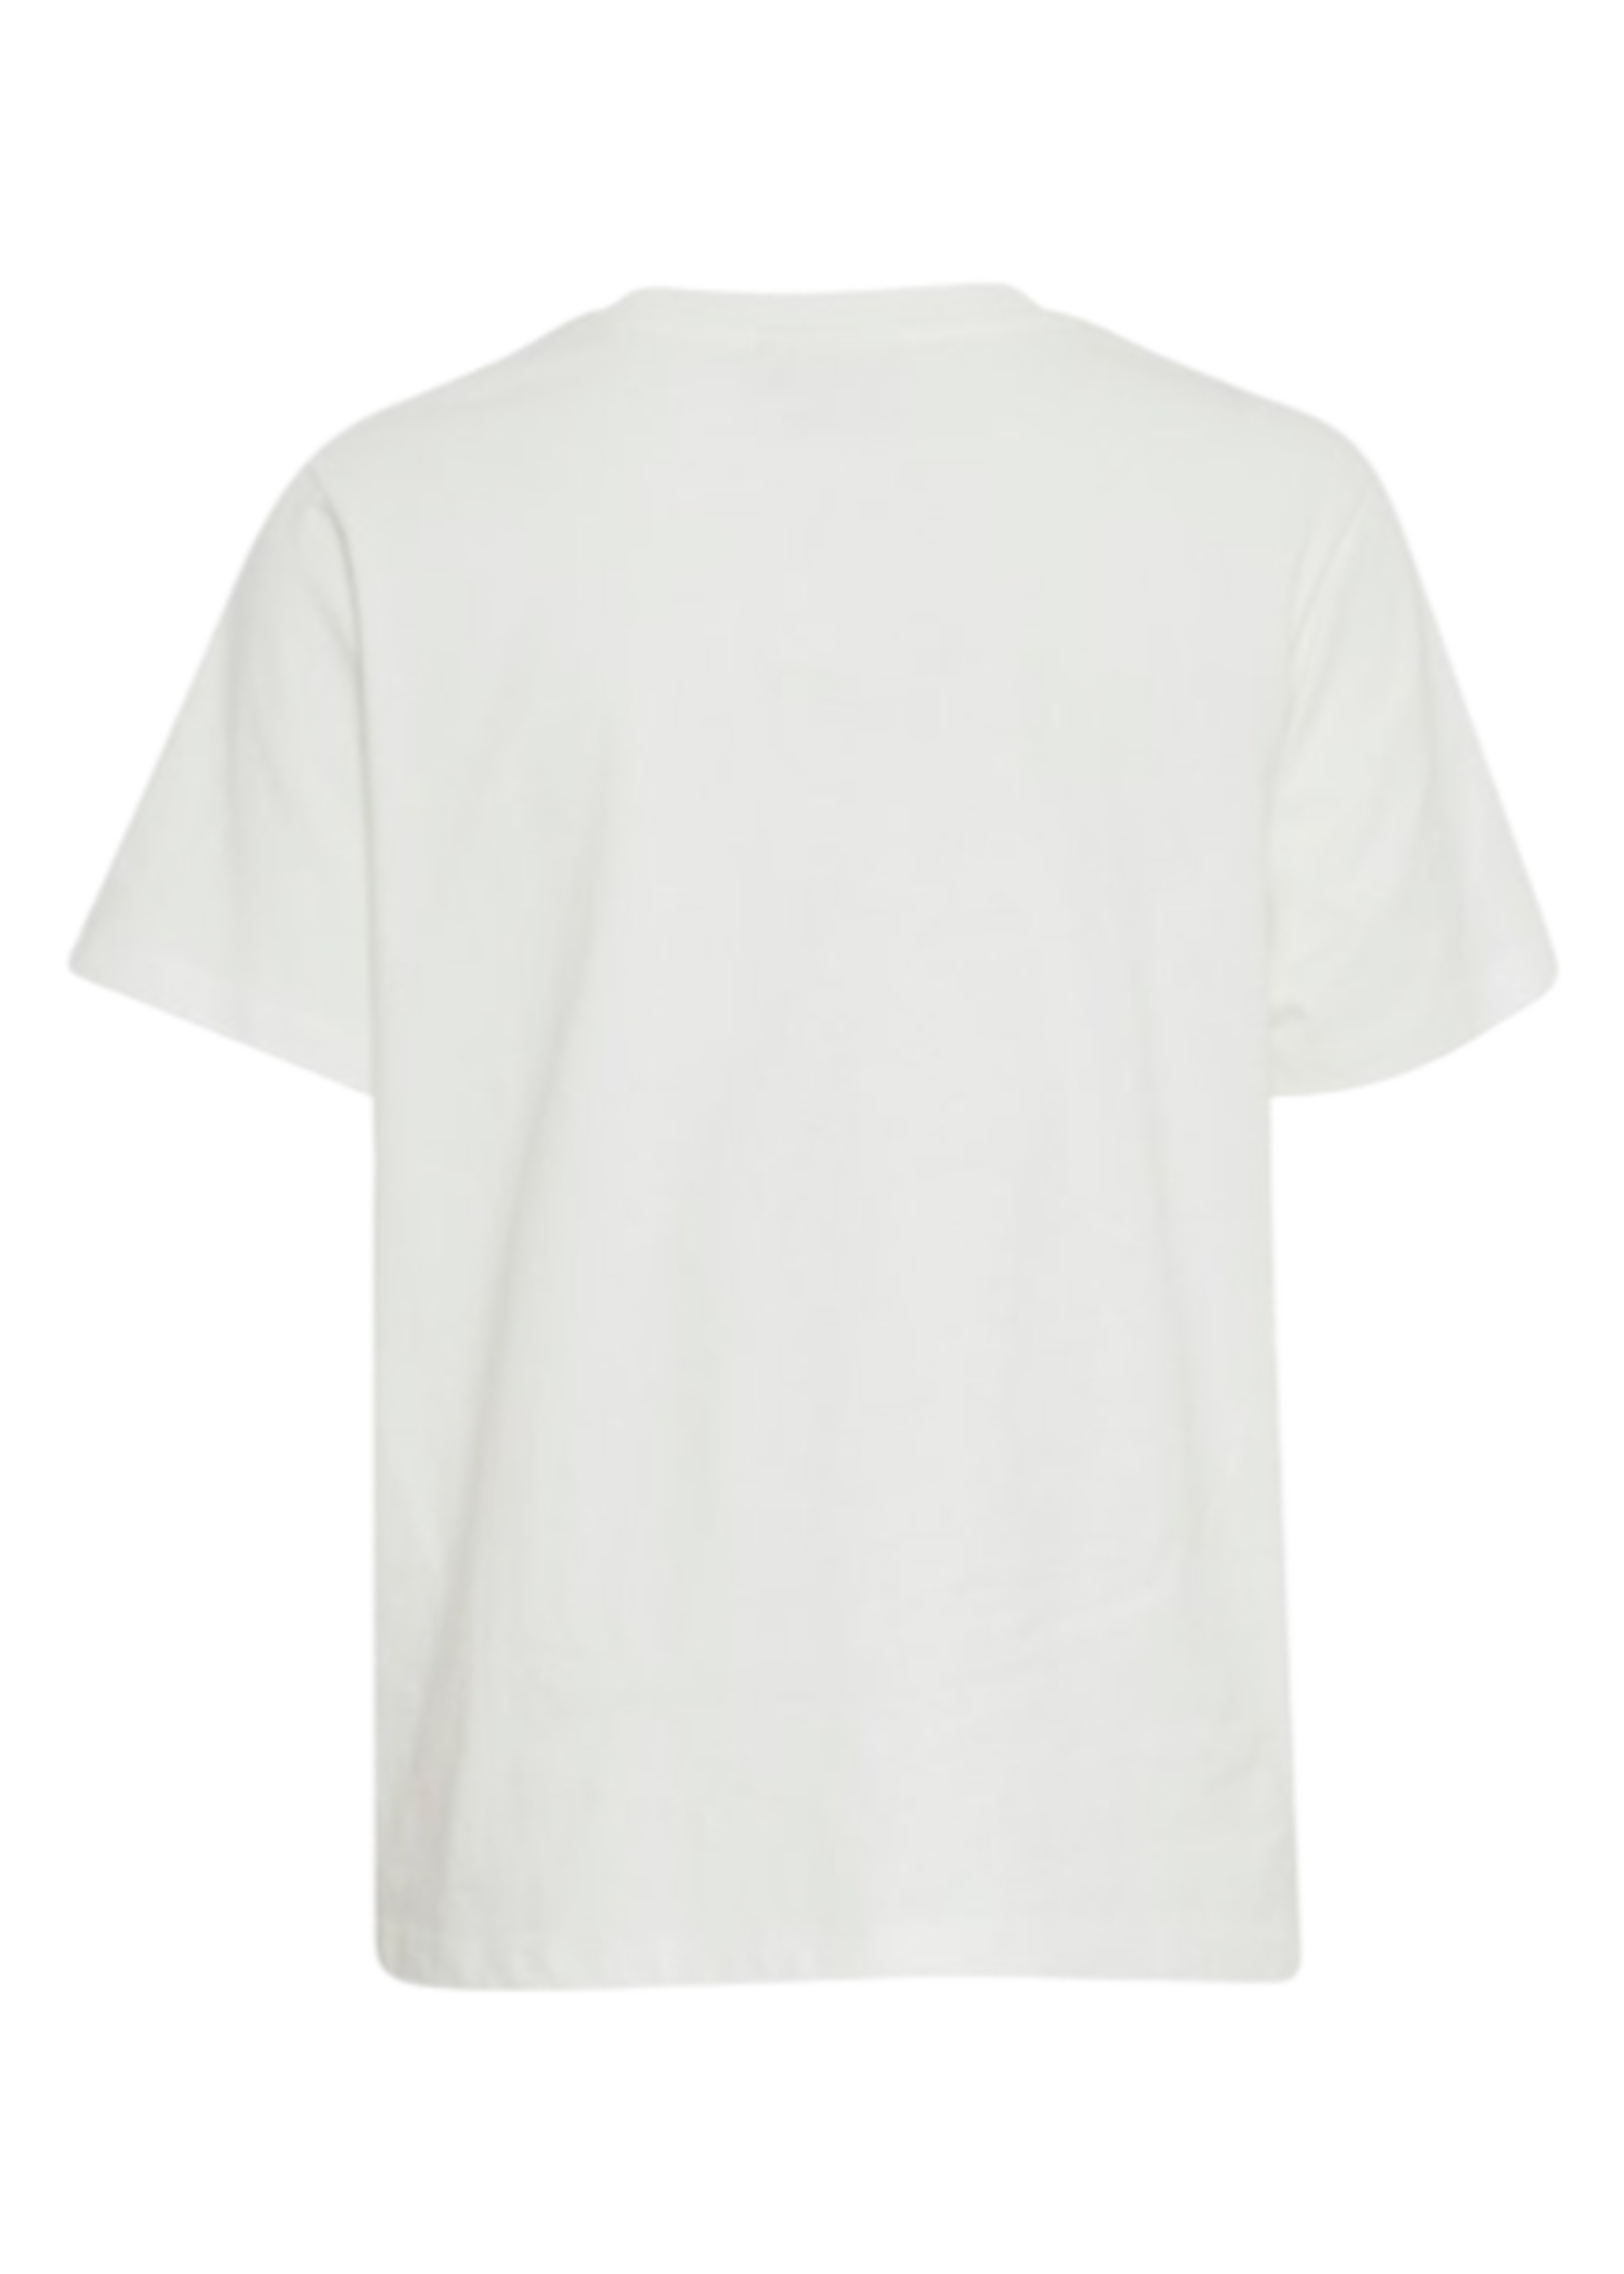 ICHI Ihpalmer basic tshirt white